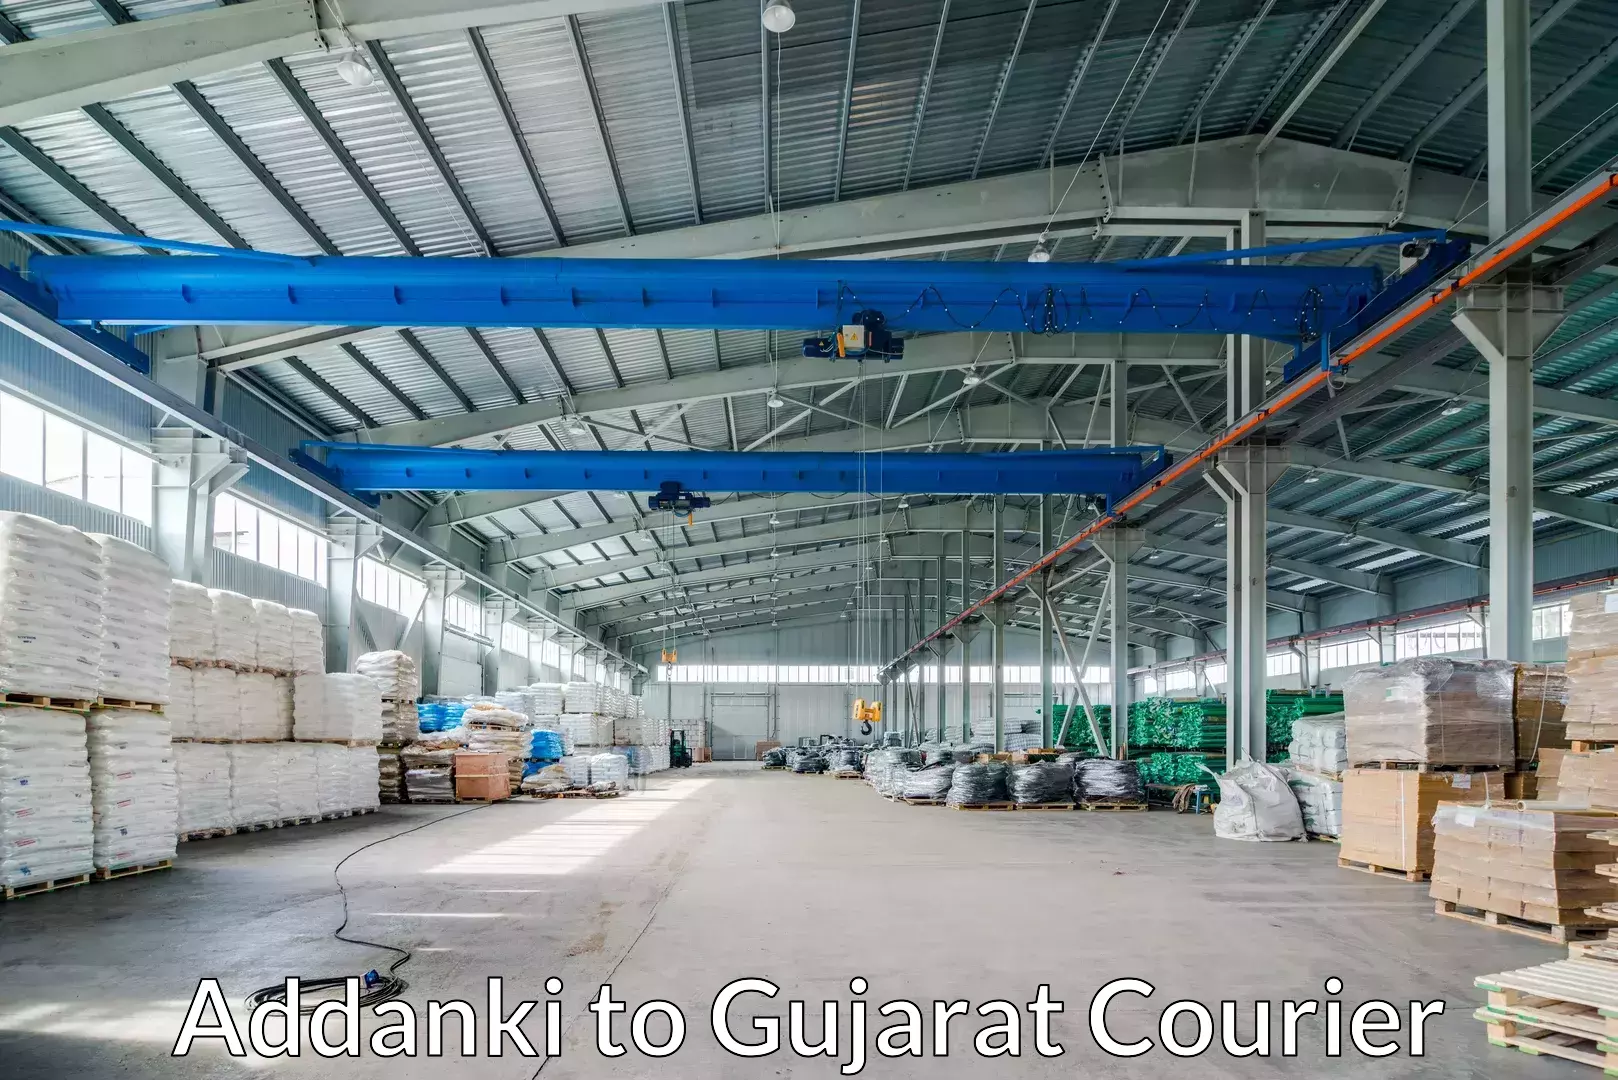 Furniture transport specialists Addanki to Gujarat